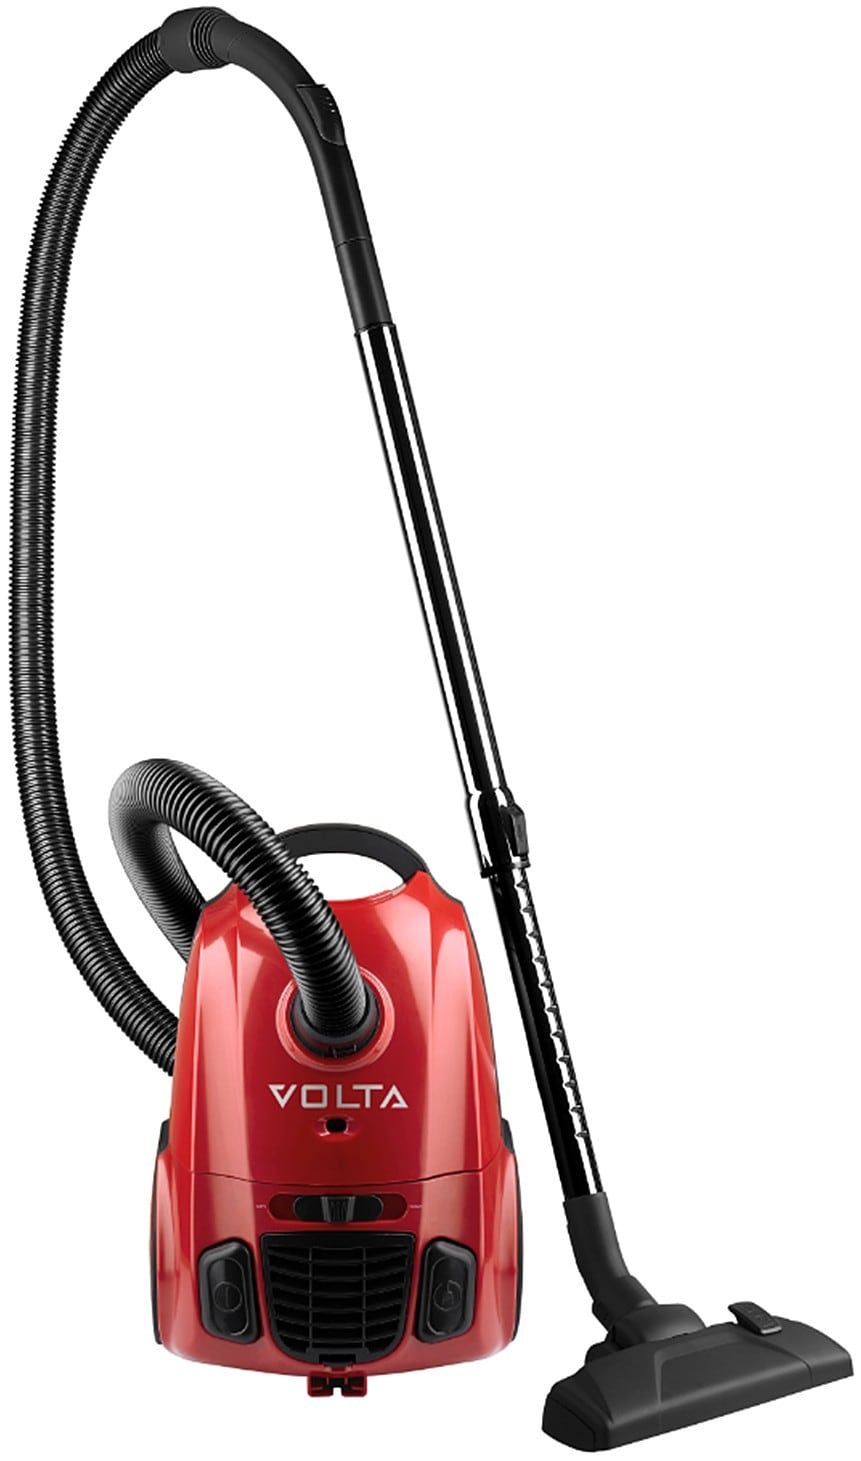 Volta støvsuger U2406NEL - Støvsuger og rengjøring - Elkjøp